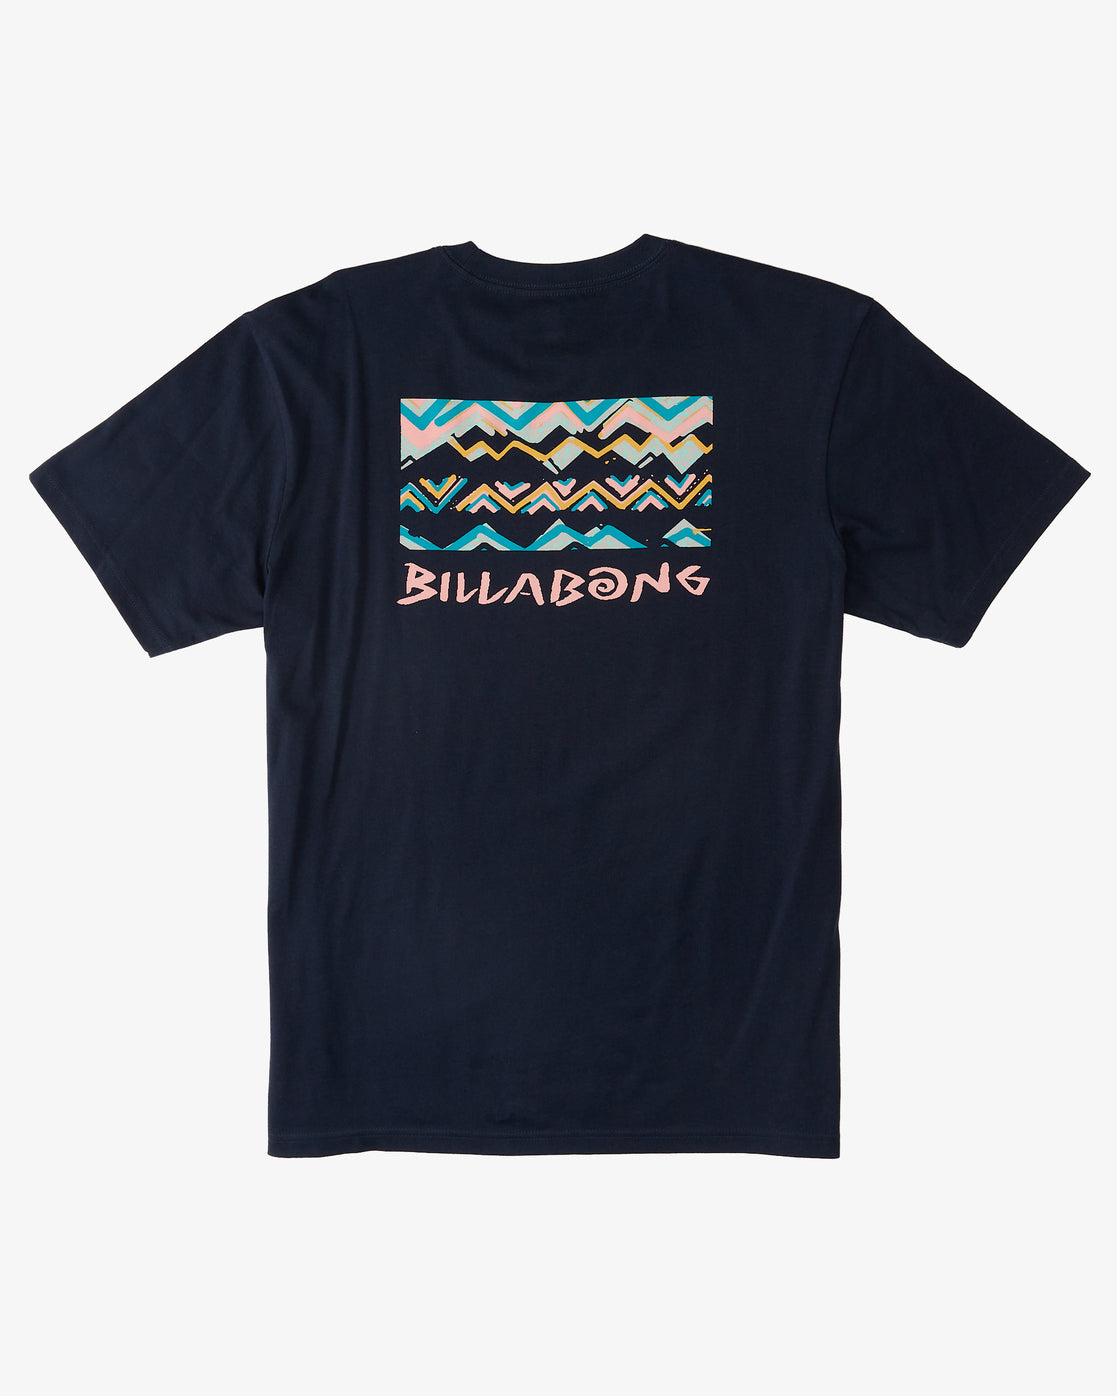 Billabong Segment T-Shirt in Navy